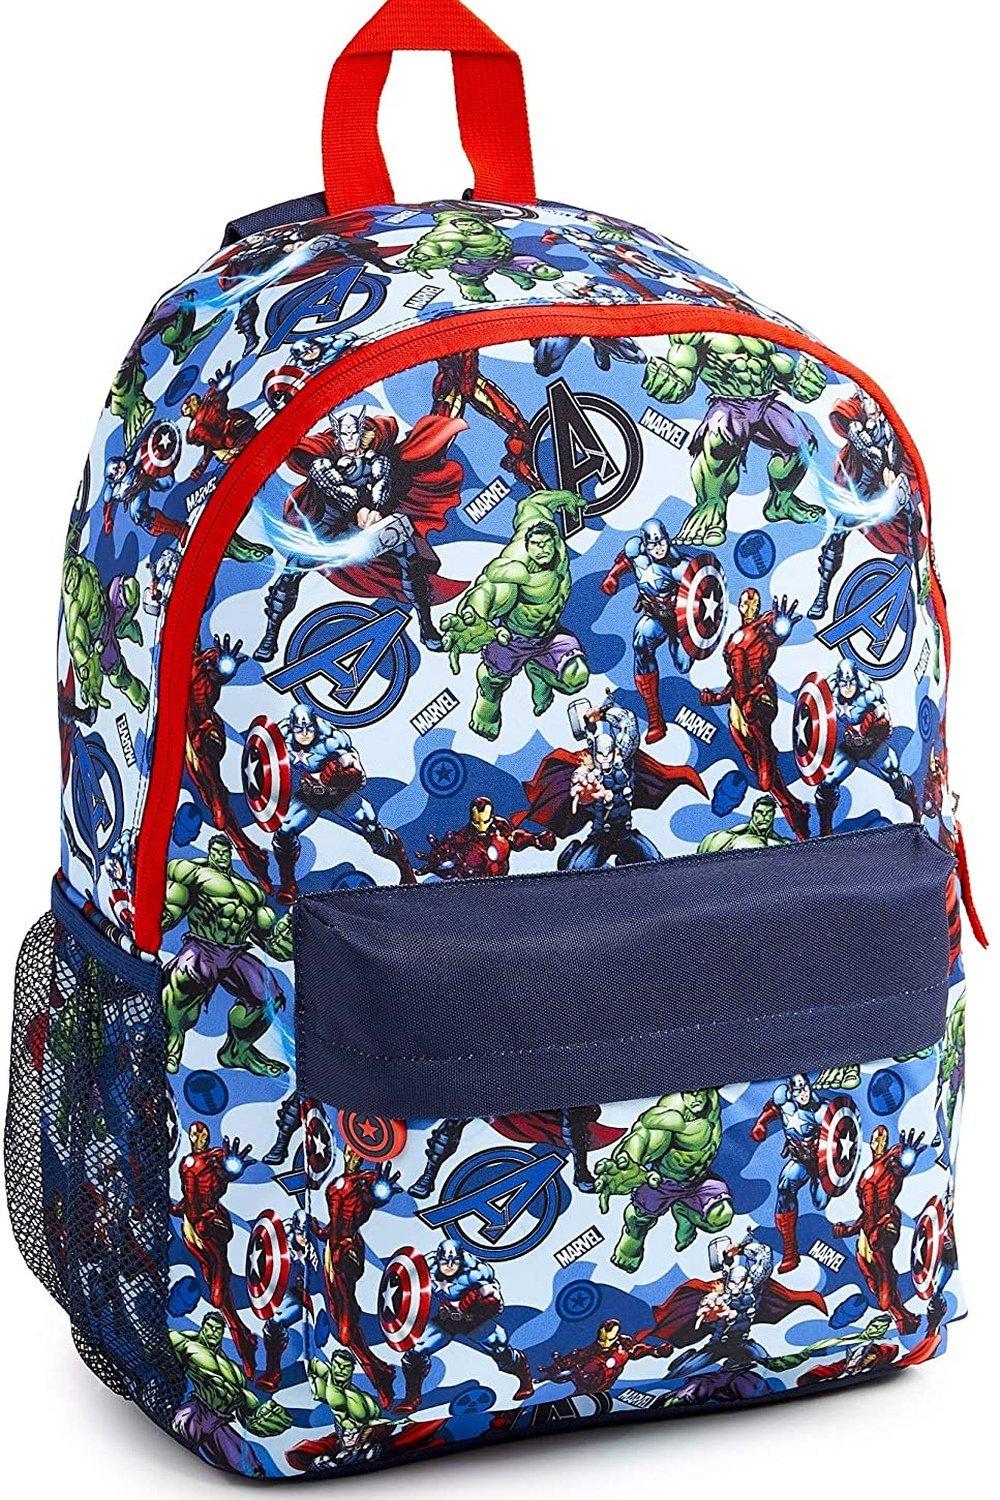 Большой рюкзак Avengers Superheros Marvel, синий командный рюкзак beaver для девочек и мальчиков забавный дорожный ранец для подростков школьная сумка